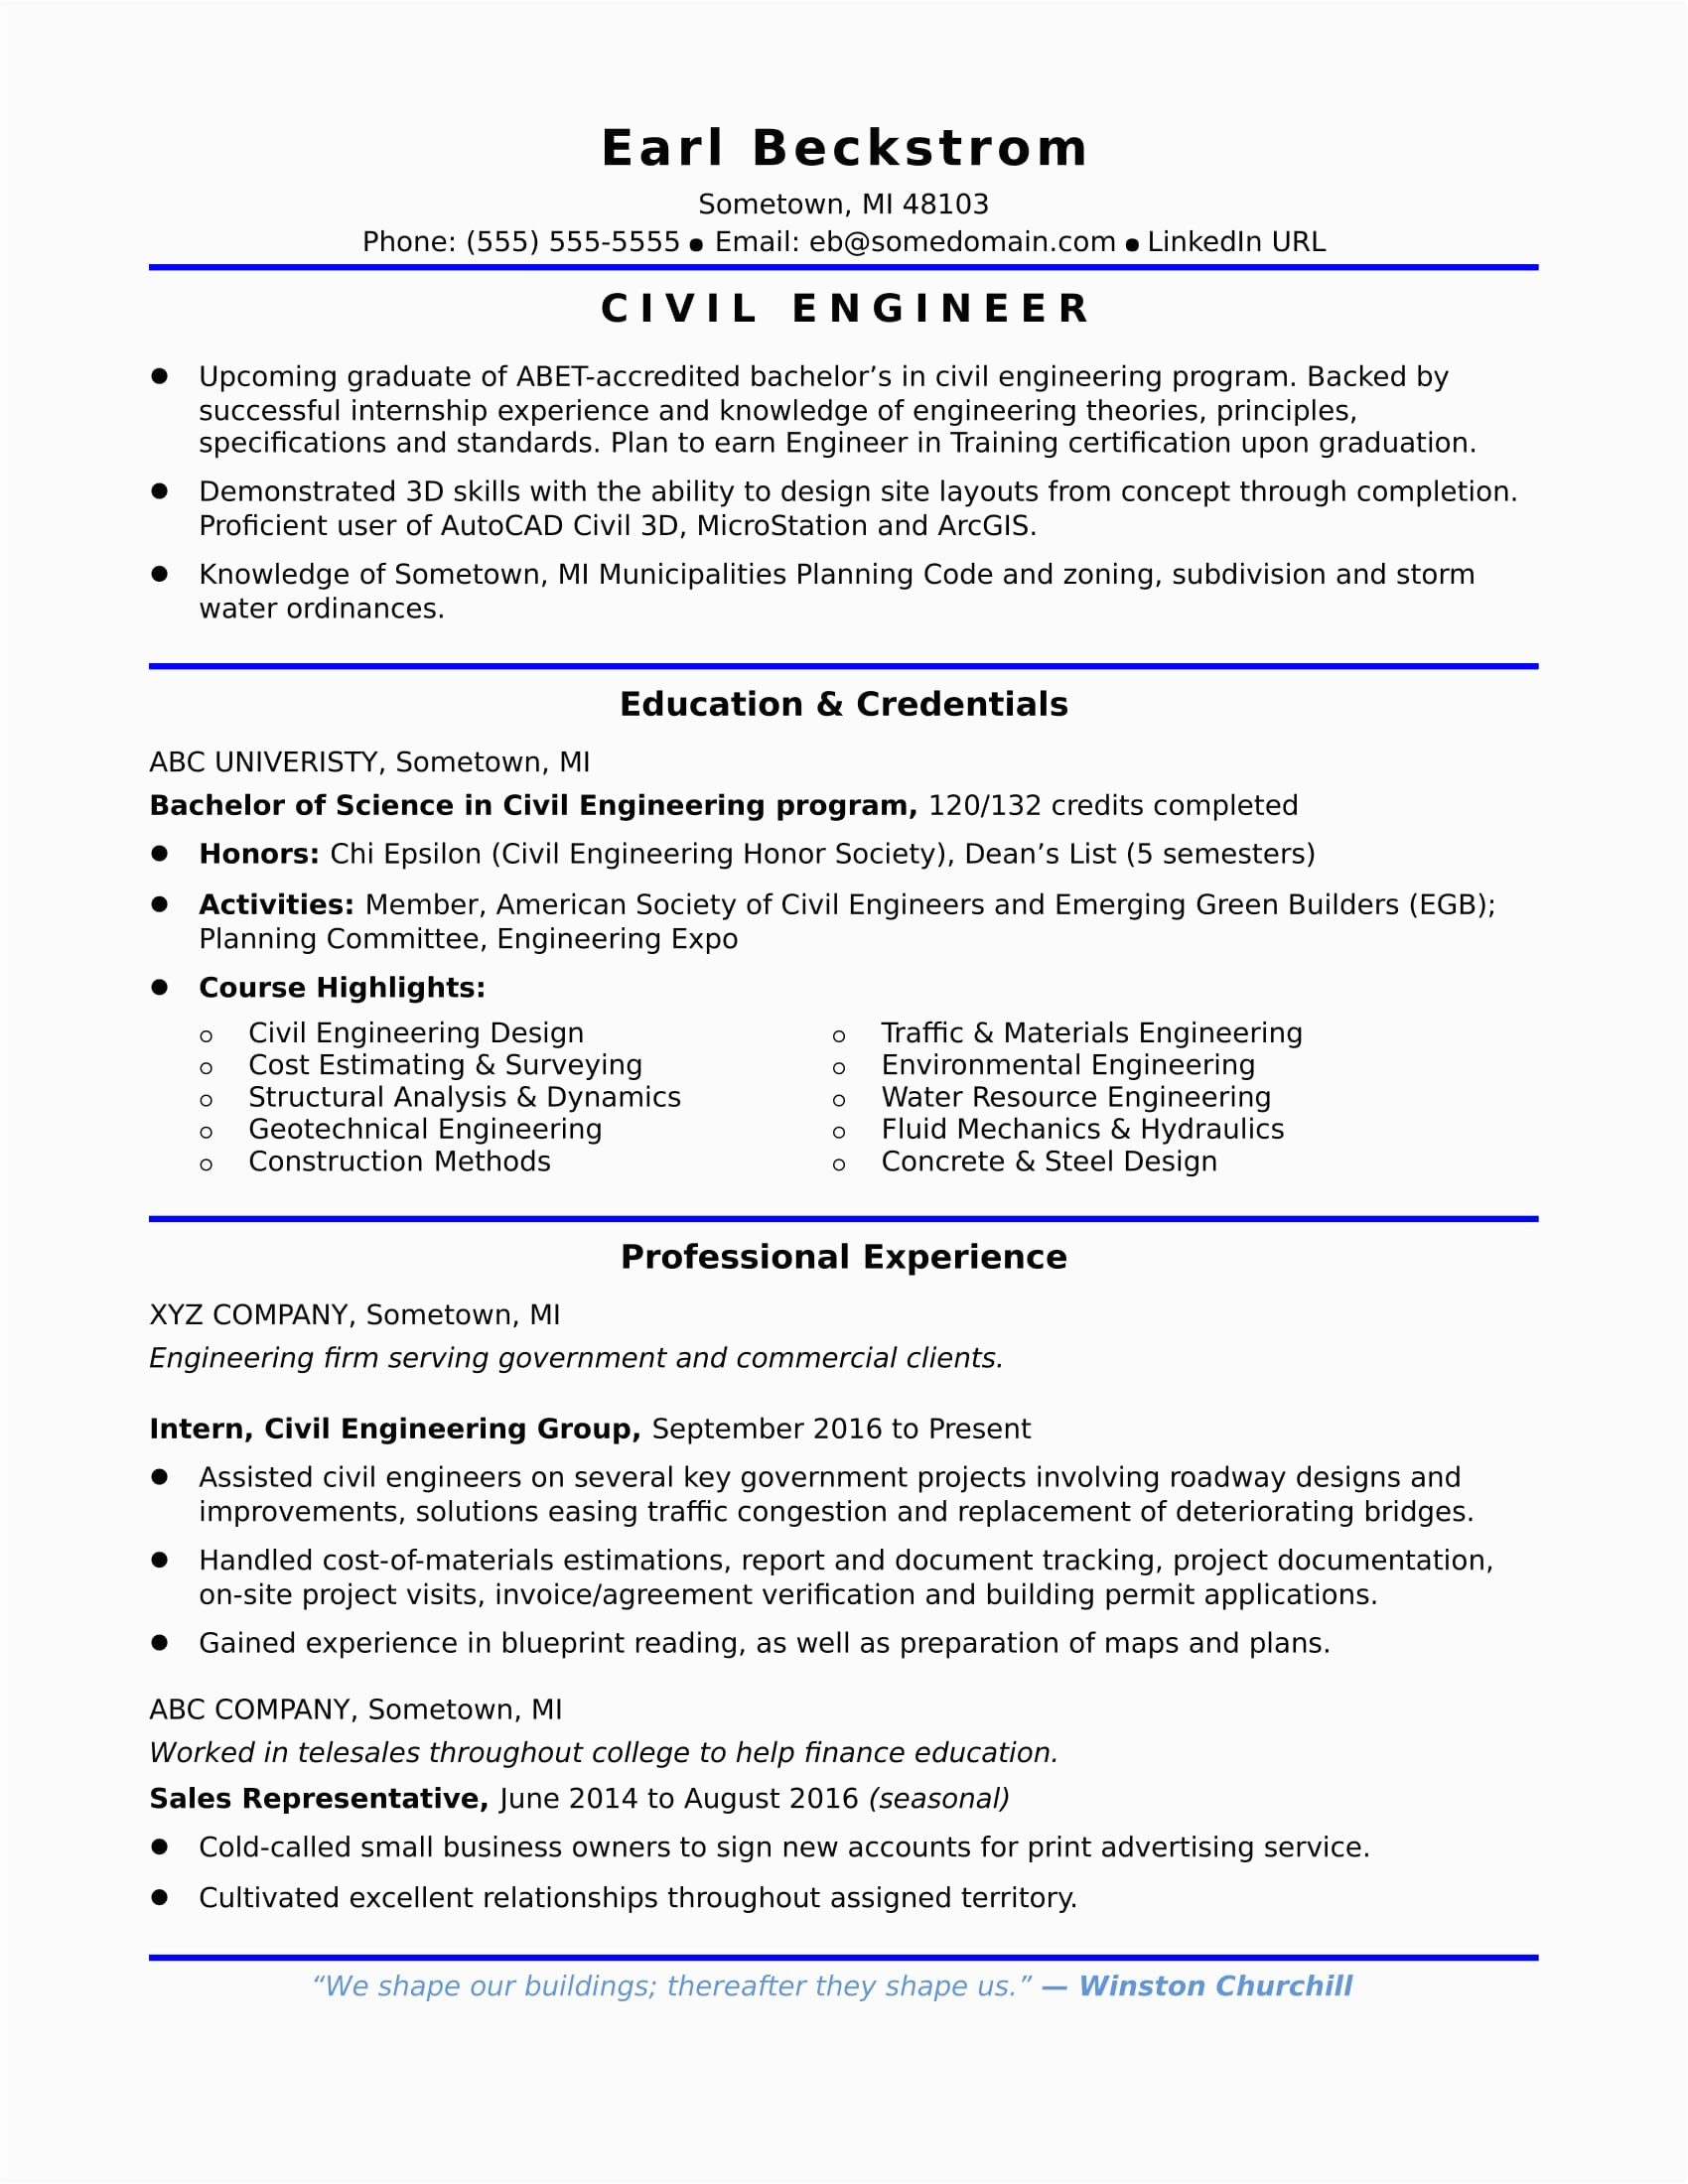 Sample Resume for Experienced Civil Engineer In India Site Engineer is Best Responsibilities